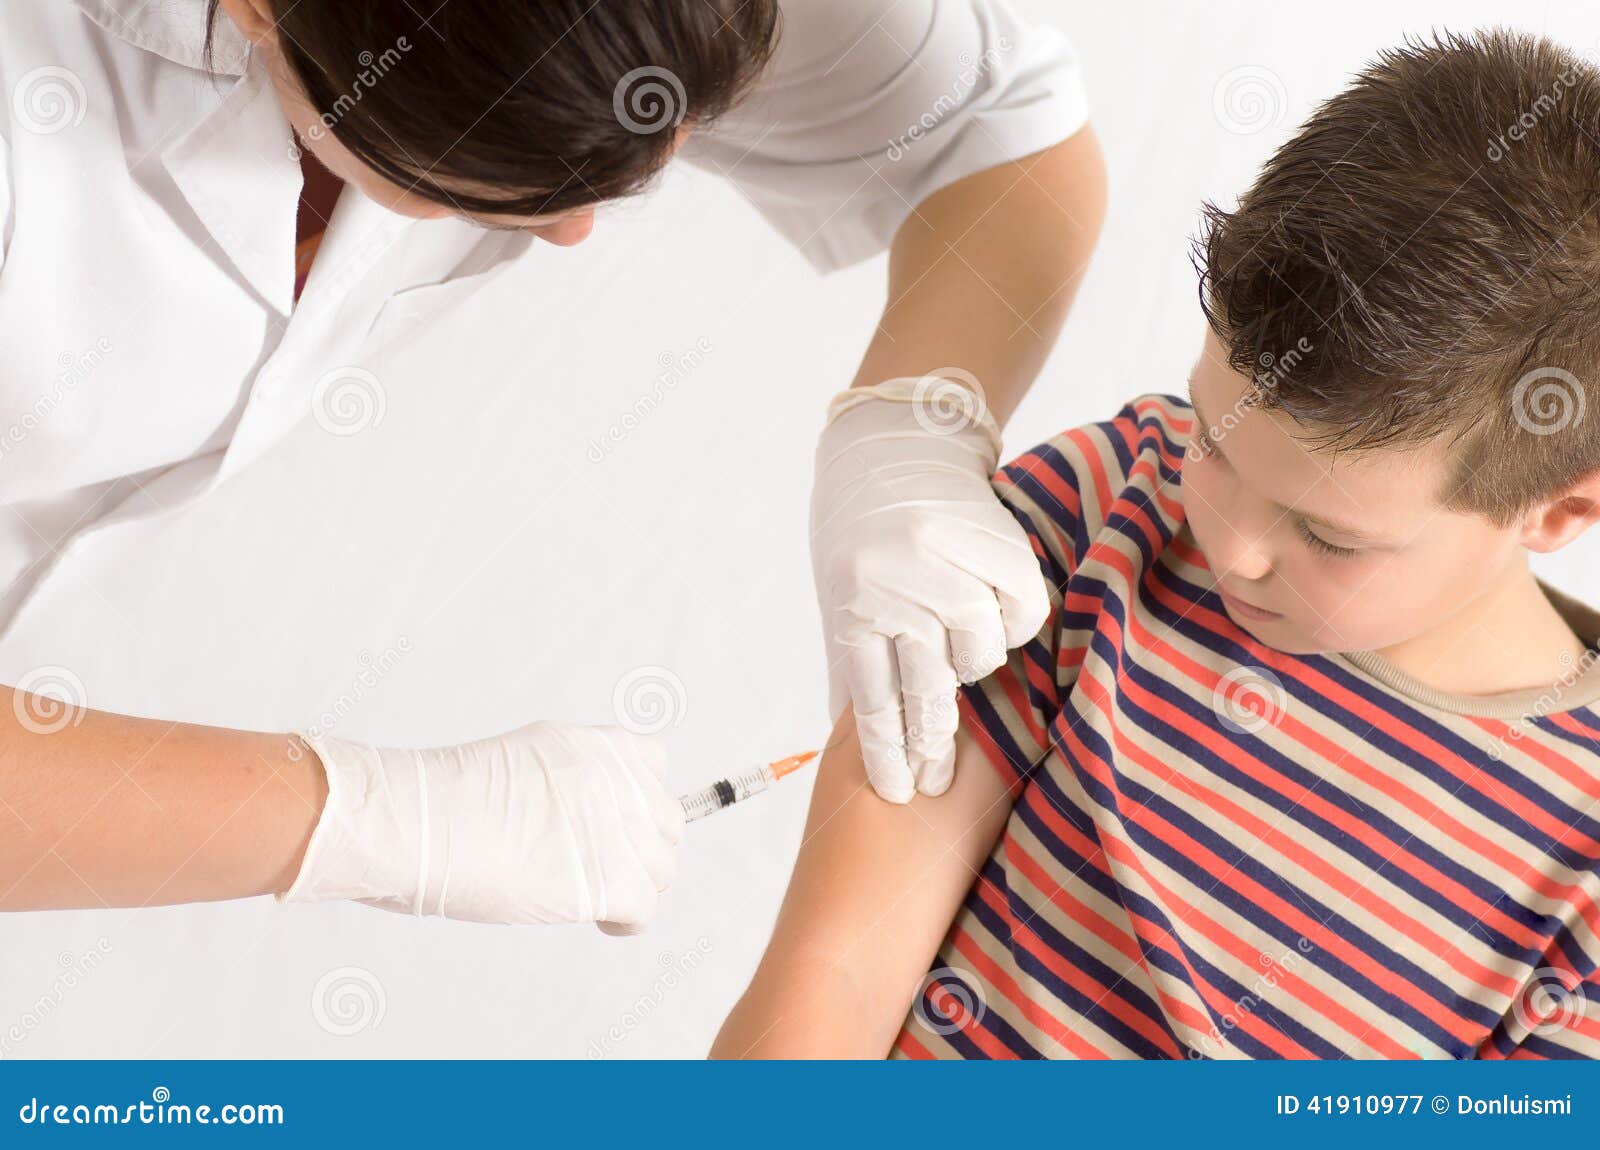 Вакцина от туляремии. Вакцинация от туляремии. Игра прививка в руку.